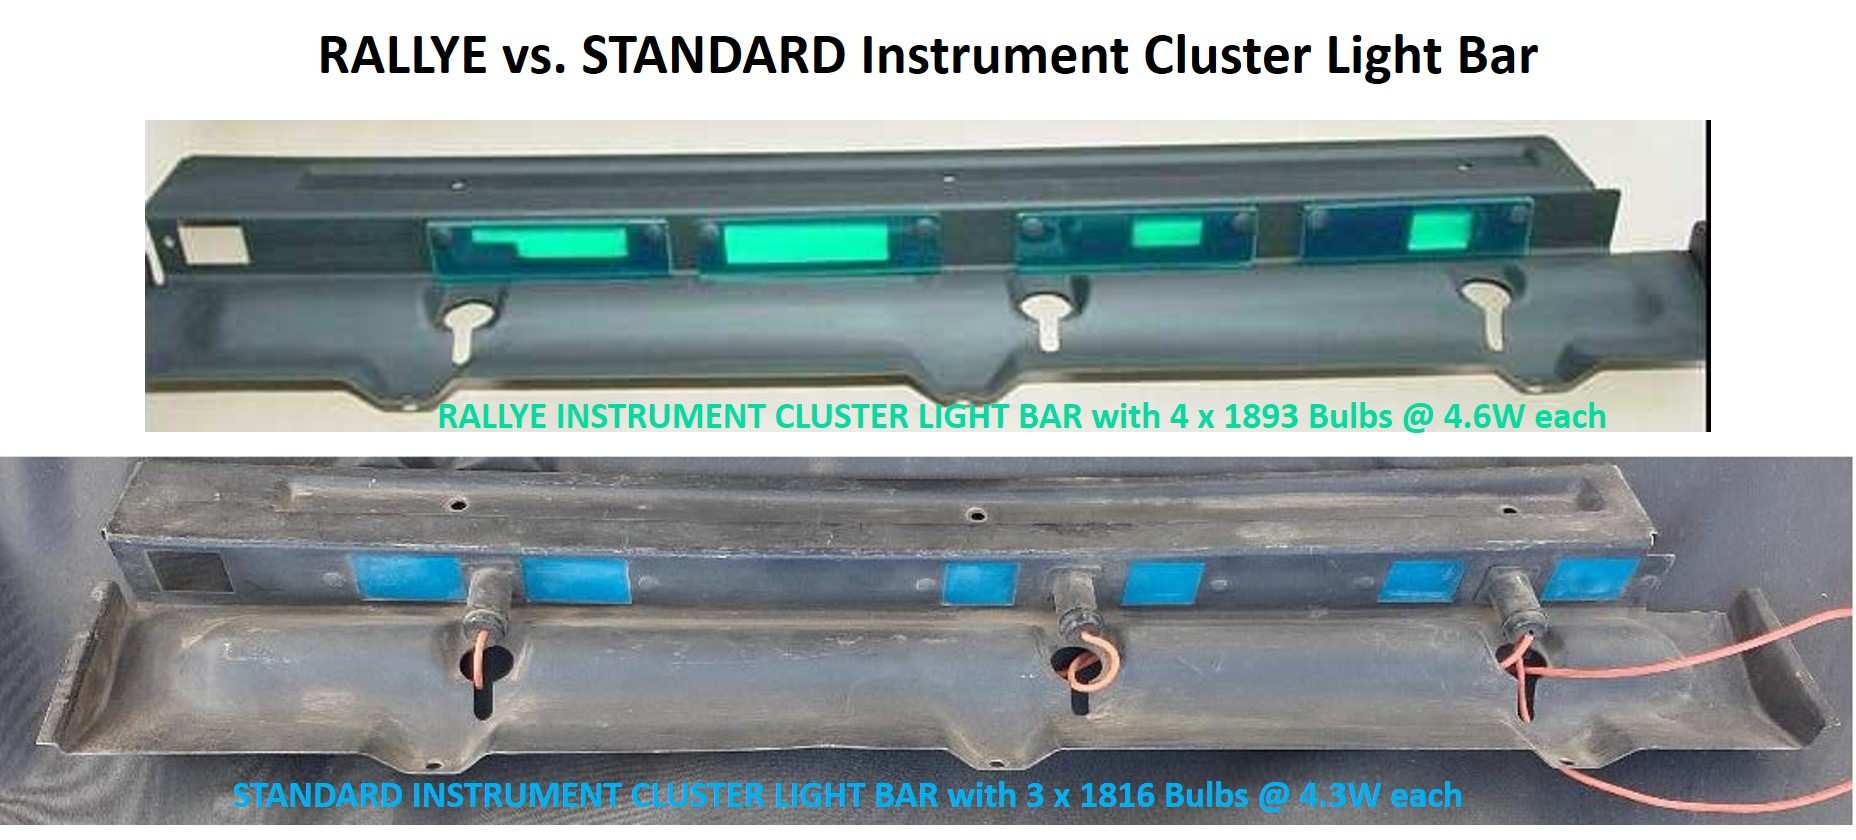 Rallye vs Standard Instrument Cluster Light Bar.jpg